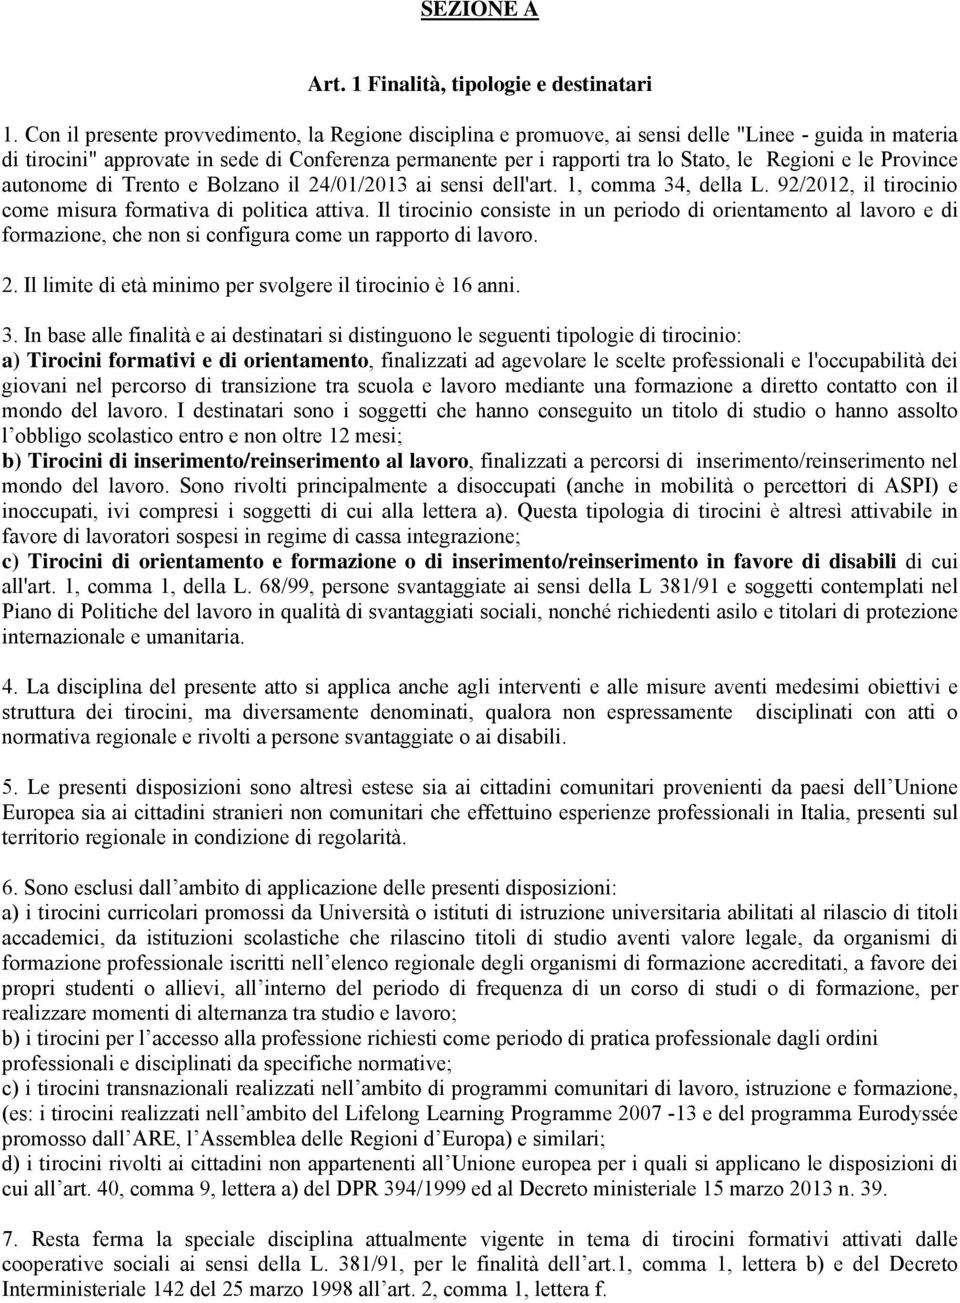 Regioni e le Province autonome di Trento e Bolzano il 24/01/2013 ai sensi dell'art. 1, comma 34, della L. 92/2012, il tirocinio come misura formativa di politica attiva.